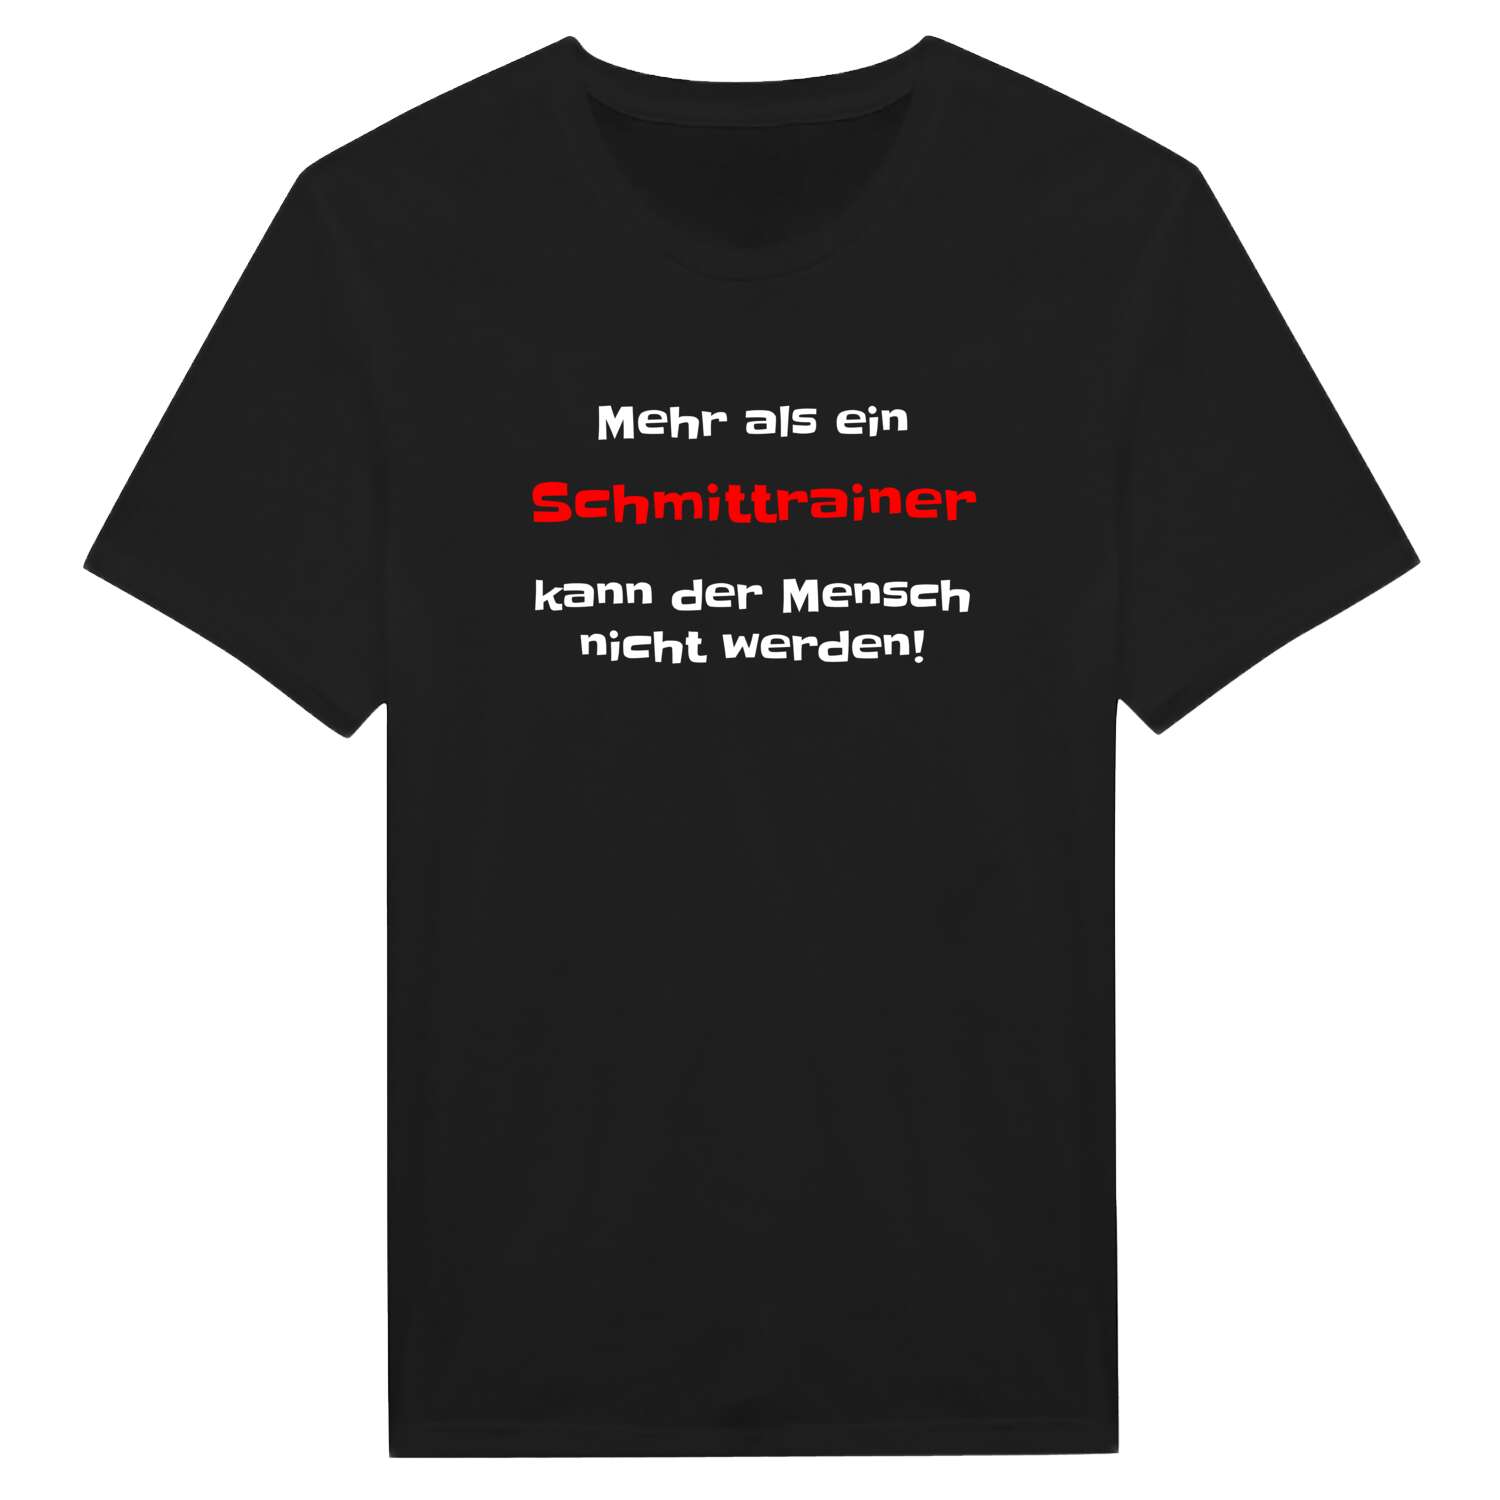 Schmittrain T-Shirt »Mehr als ein«